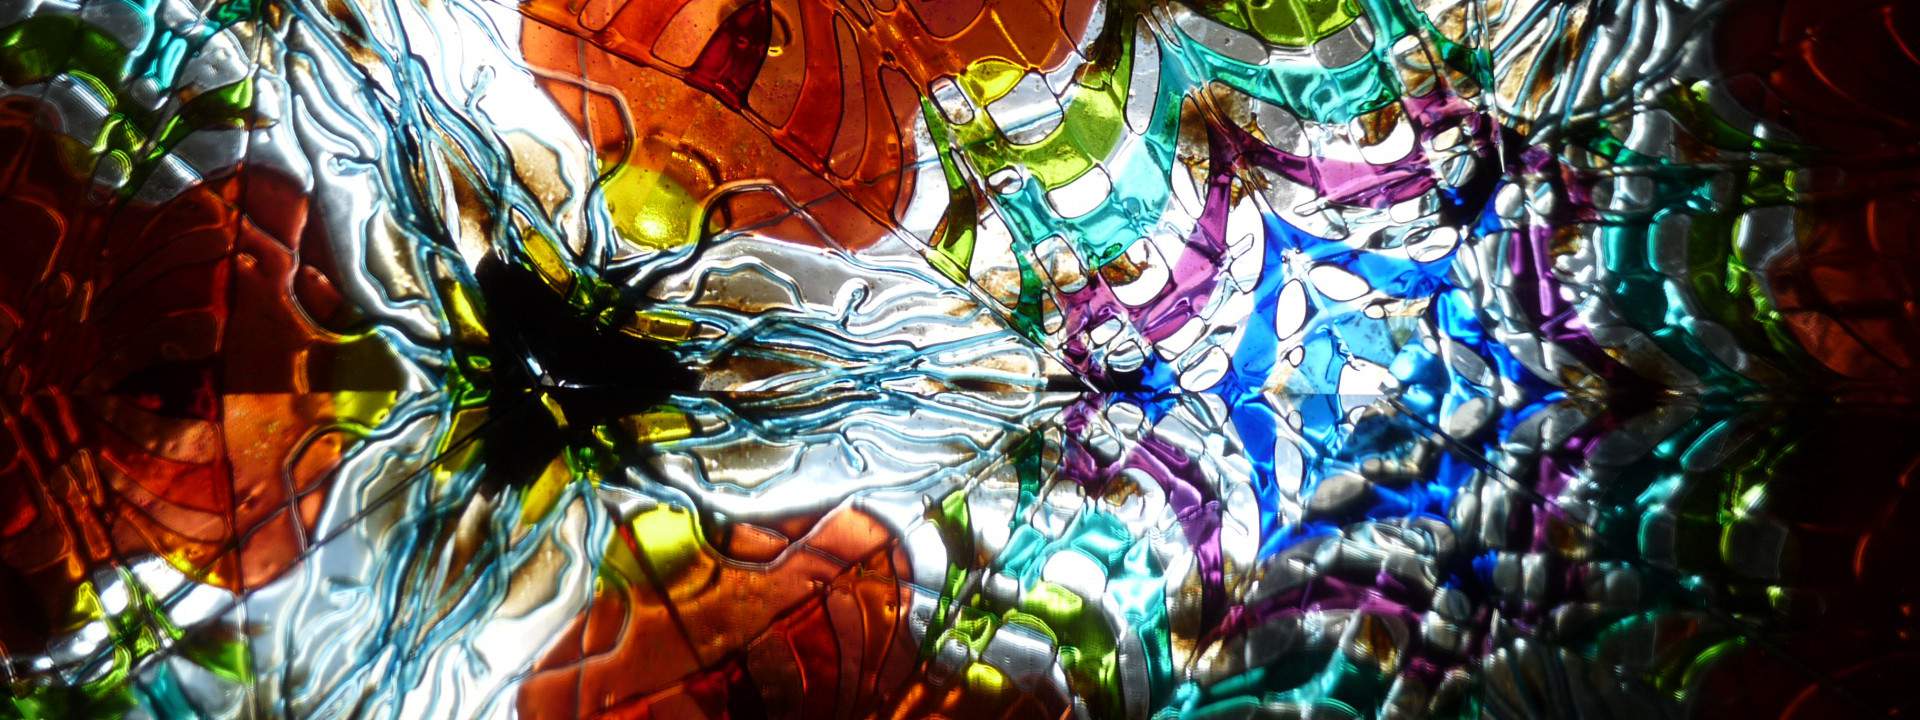 Dutch Glass Biennale, eerste editie: Living the Glass Age - expositie in het Eemklooster Amersfoort - 22 maart t/m 14 april 2024 Dutch Glass Biennale, eerste editie: Living the Glass Age - expositie in het Eemklooster Amersfoort - 22 maart t/m 14 april 2024